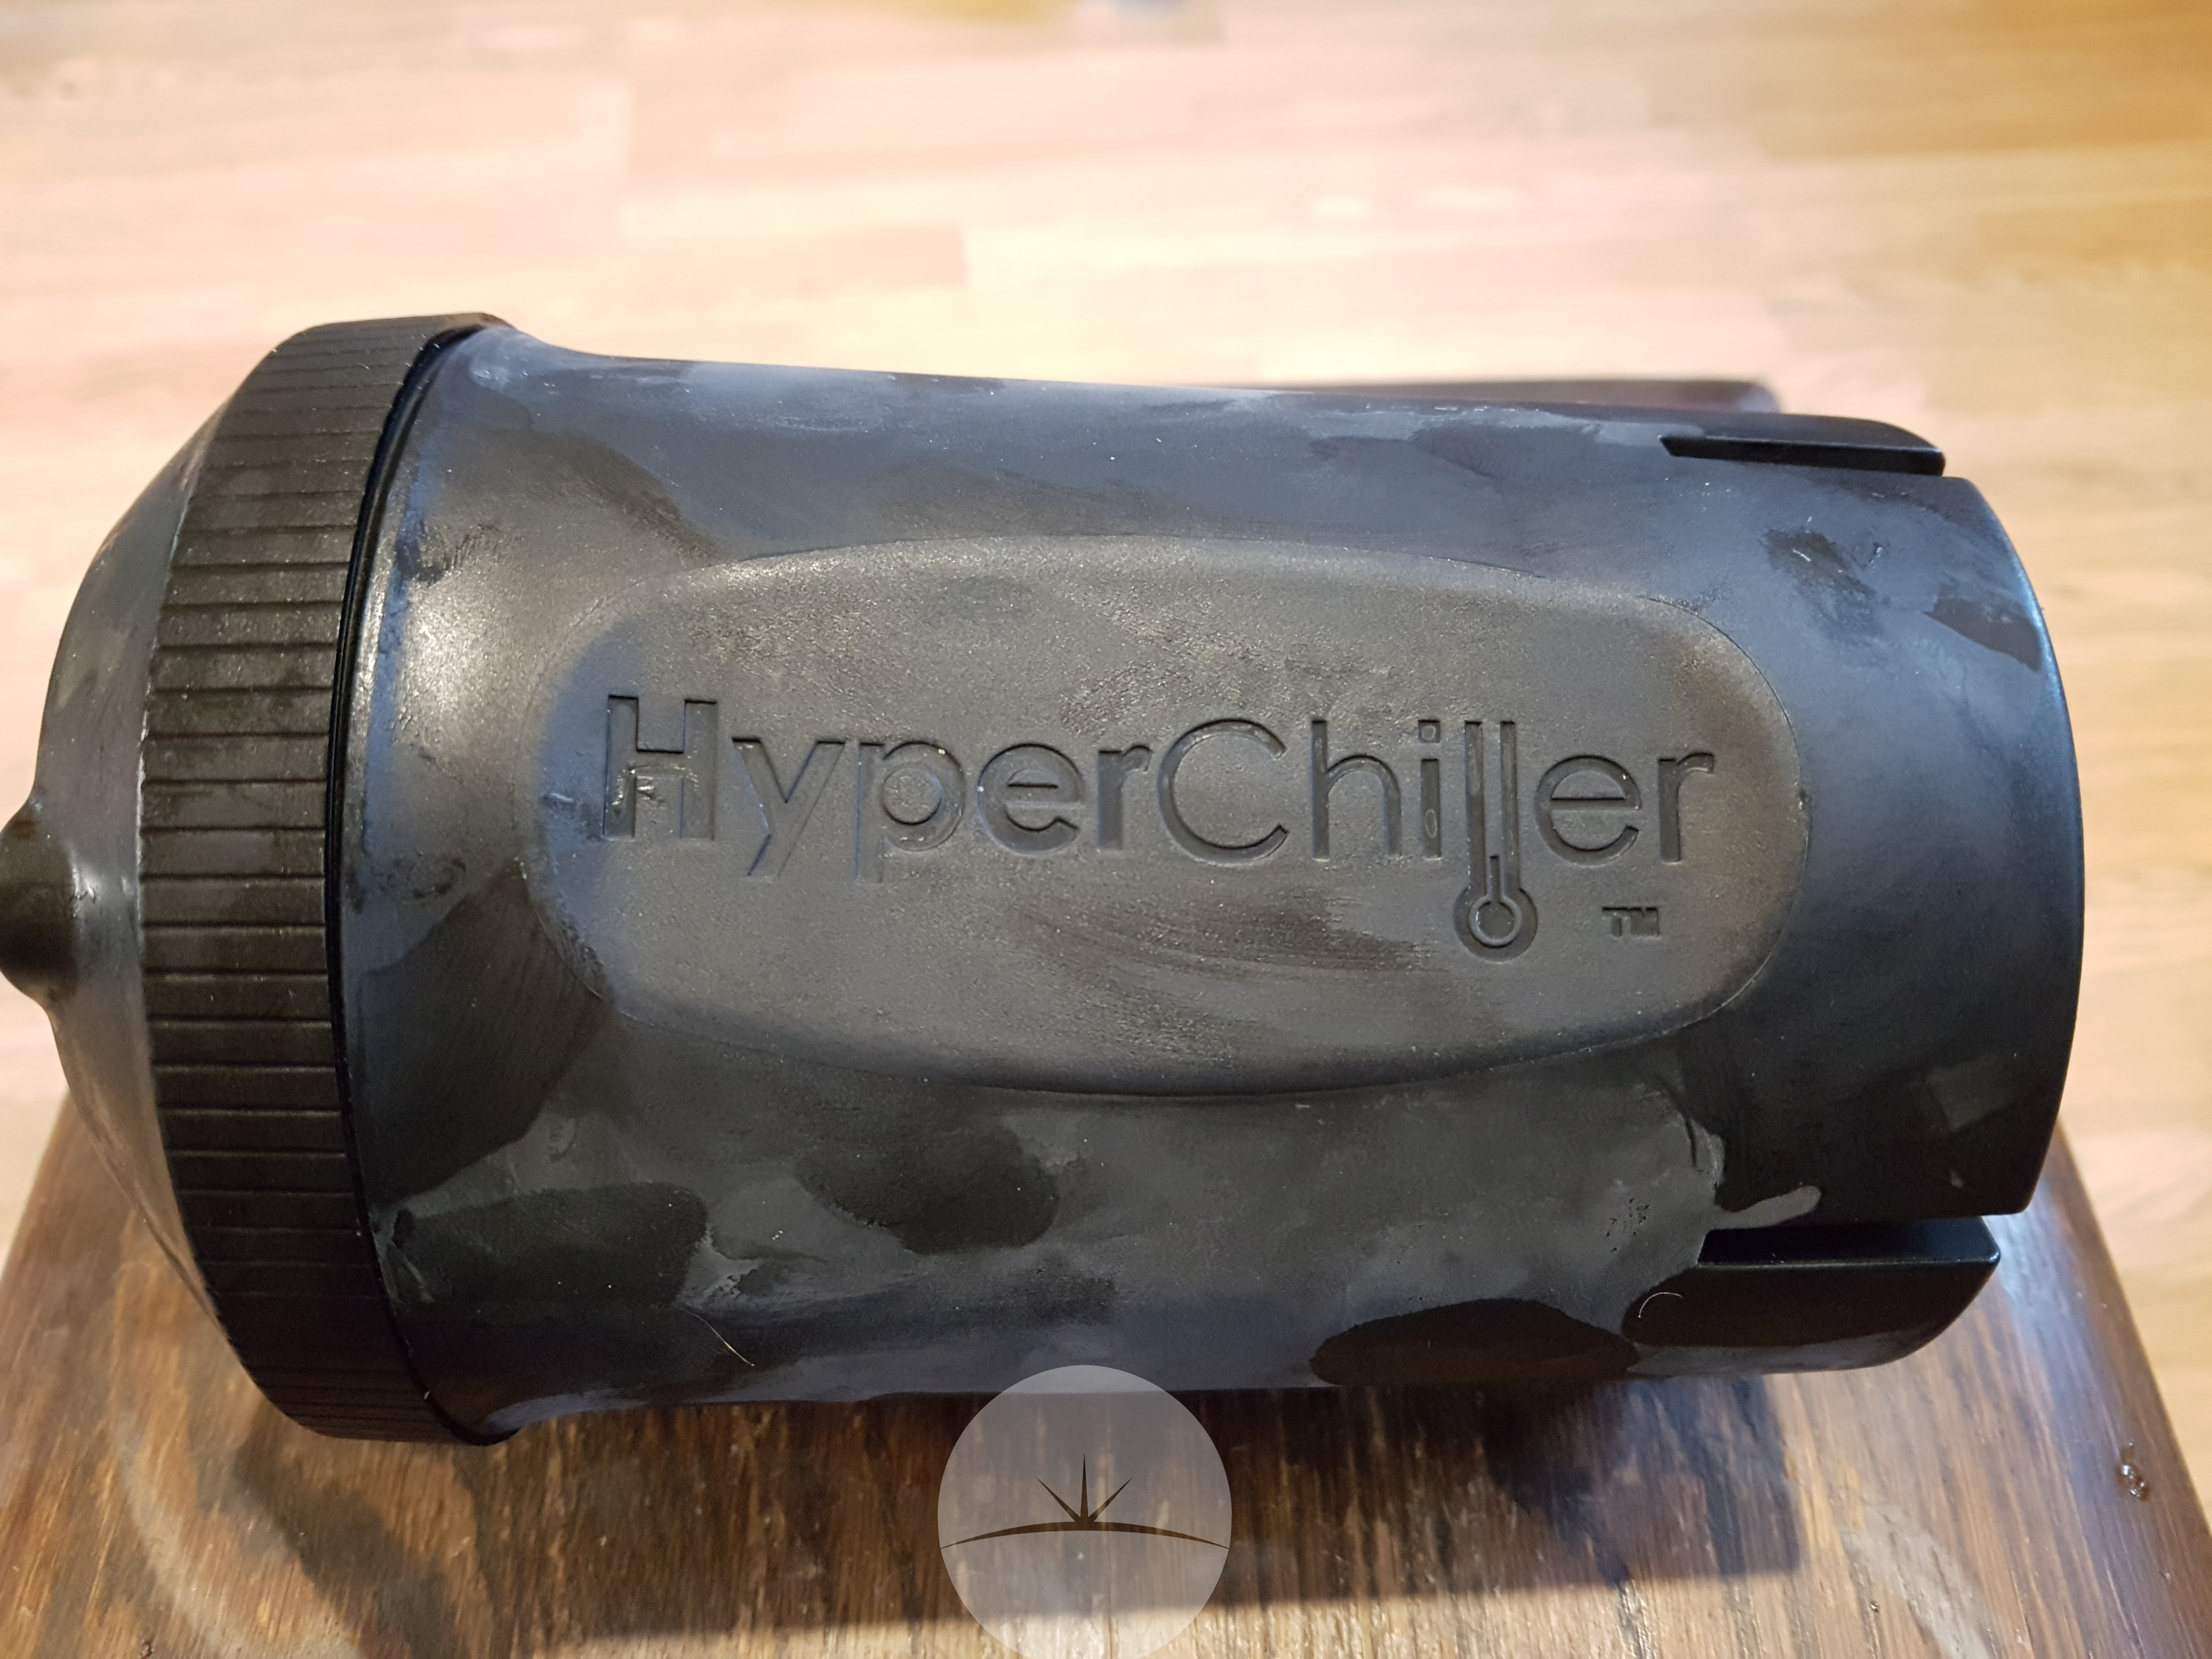 Hyperchiller Iced Coffee Maker